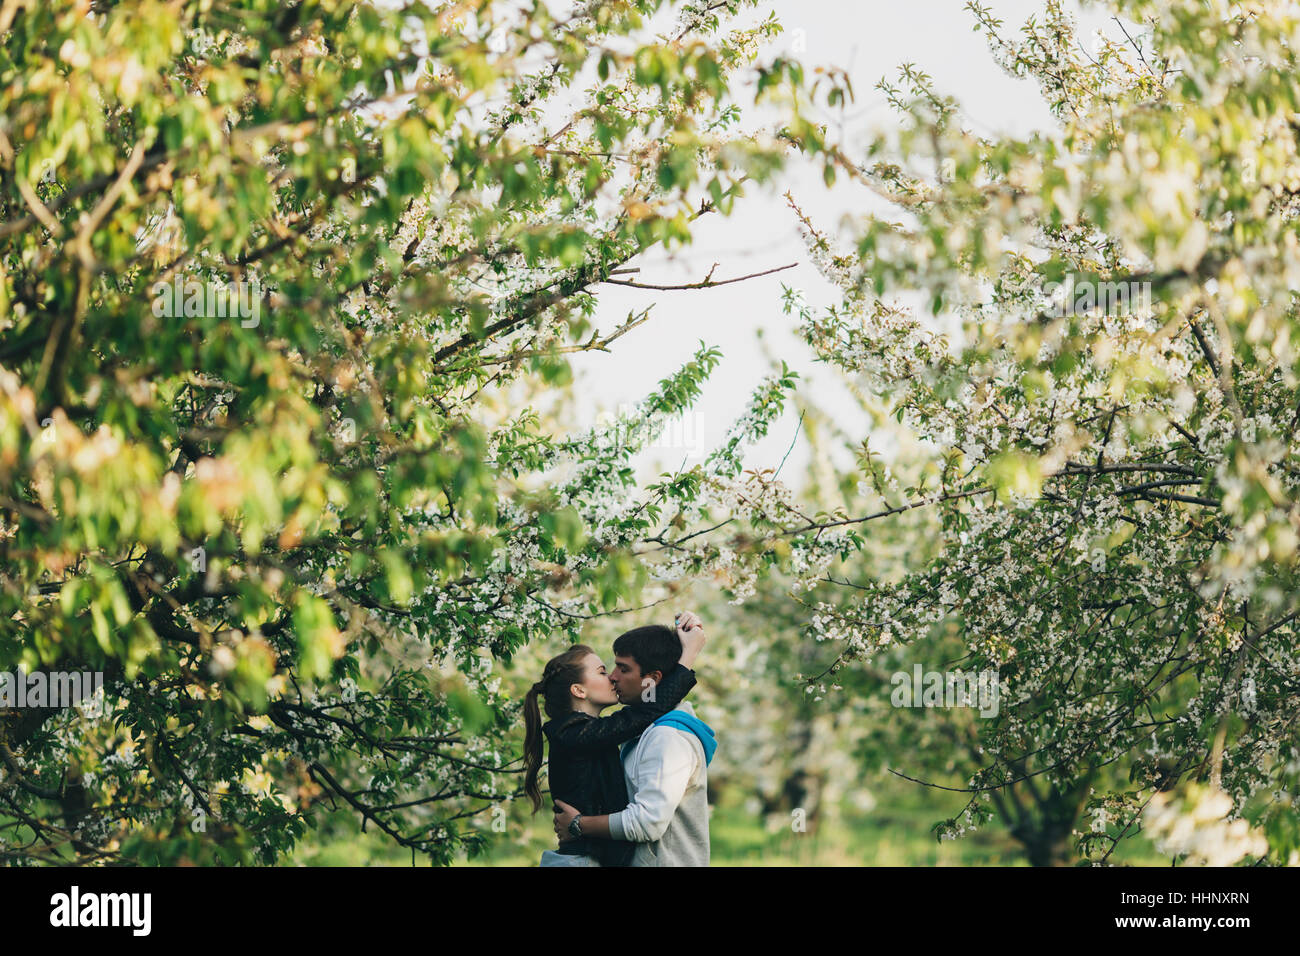 Caucasian couple kissing near trees Stock Photo